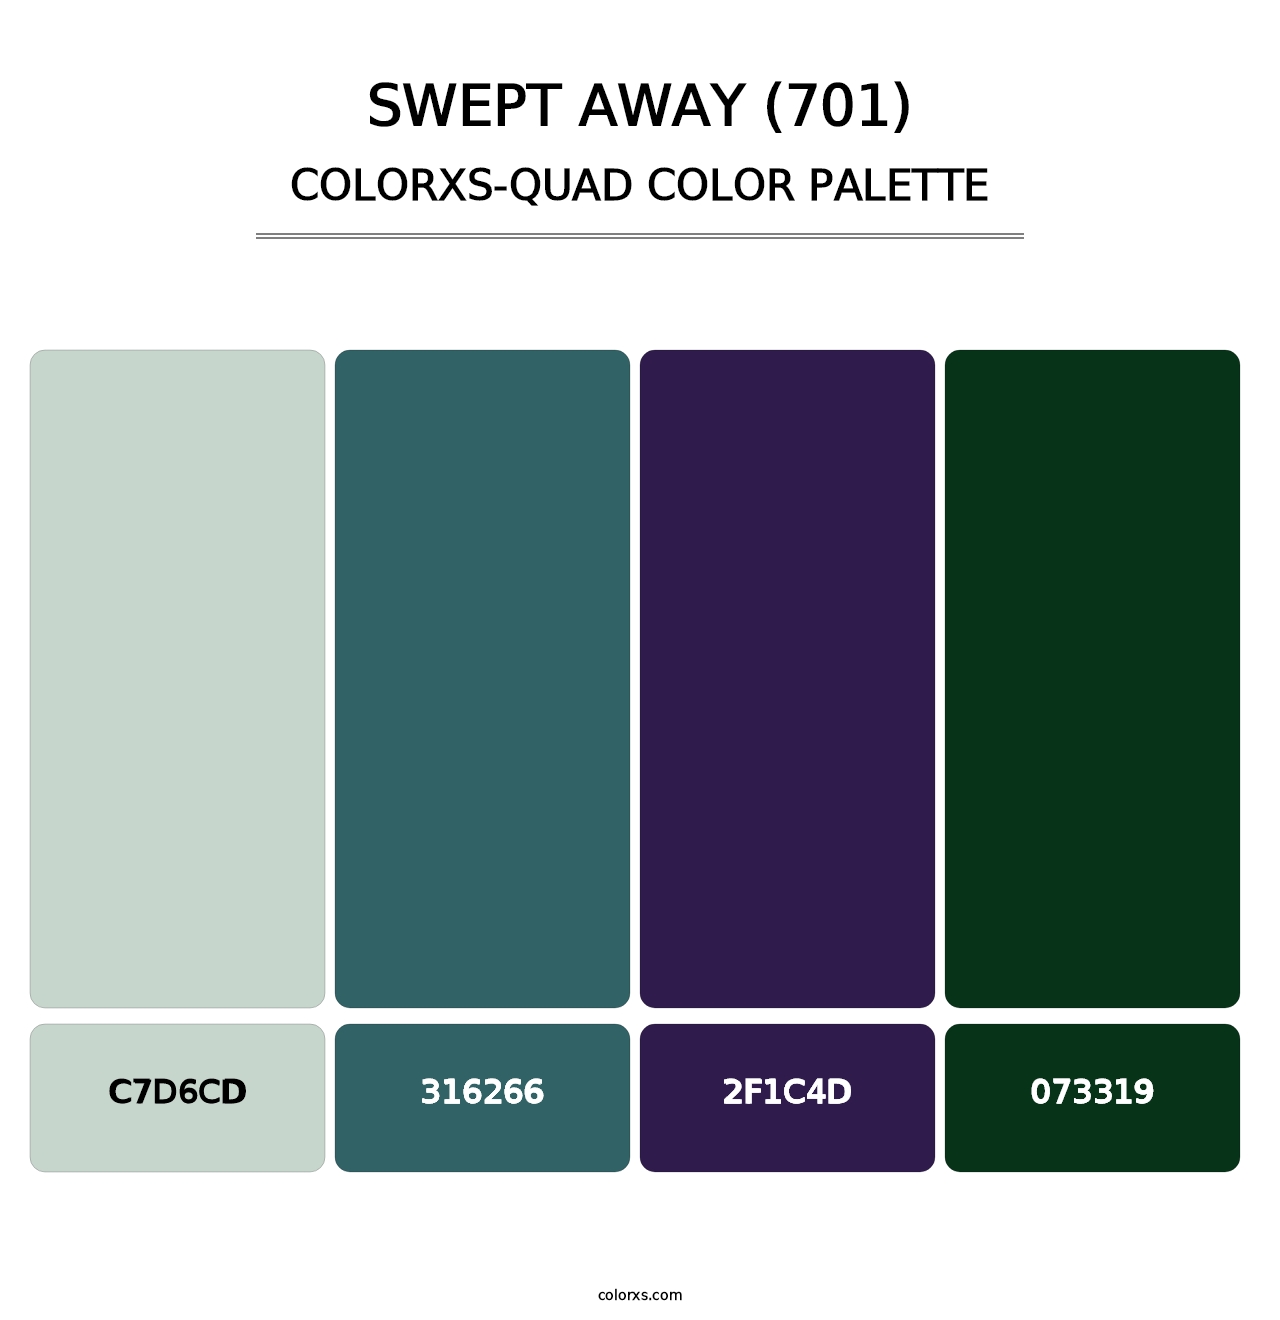 Swept Away (701) - Colorxs Quad Palette